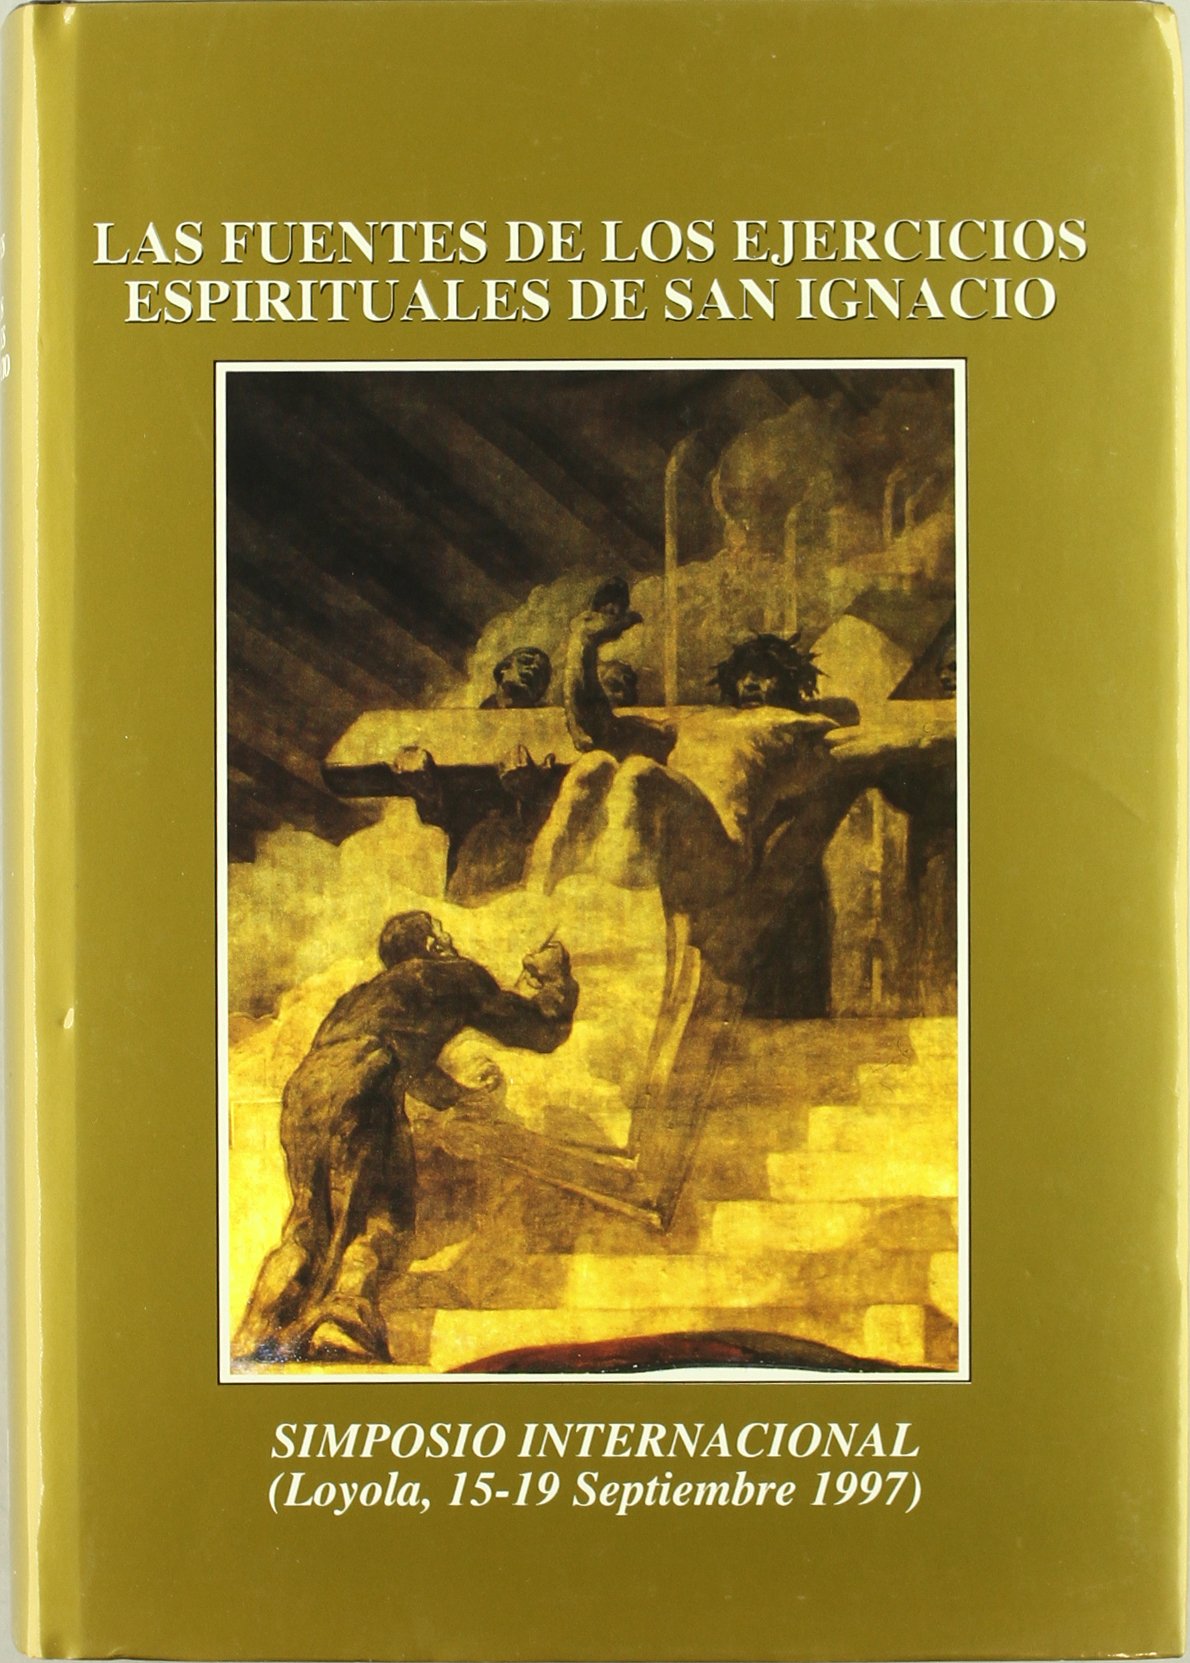 Imagen de portada del libro Las fuentes de los ejercicios espirituales de San Ignacio